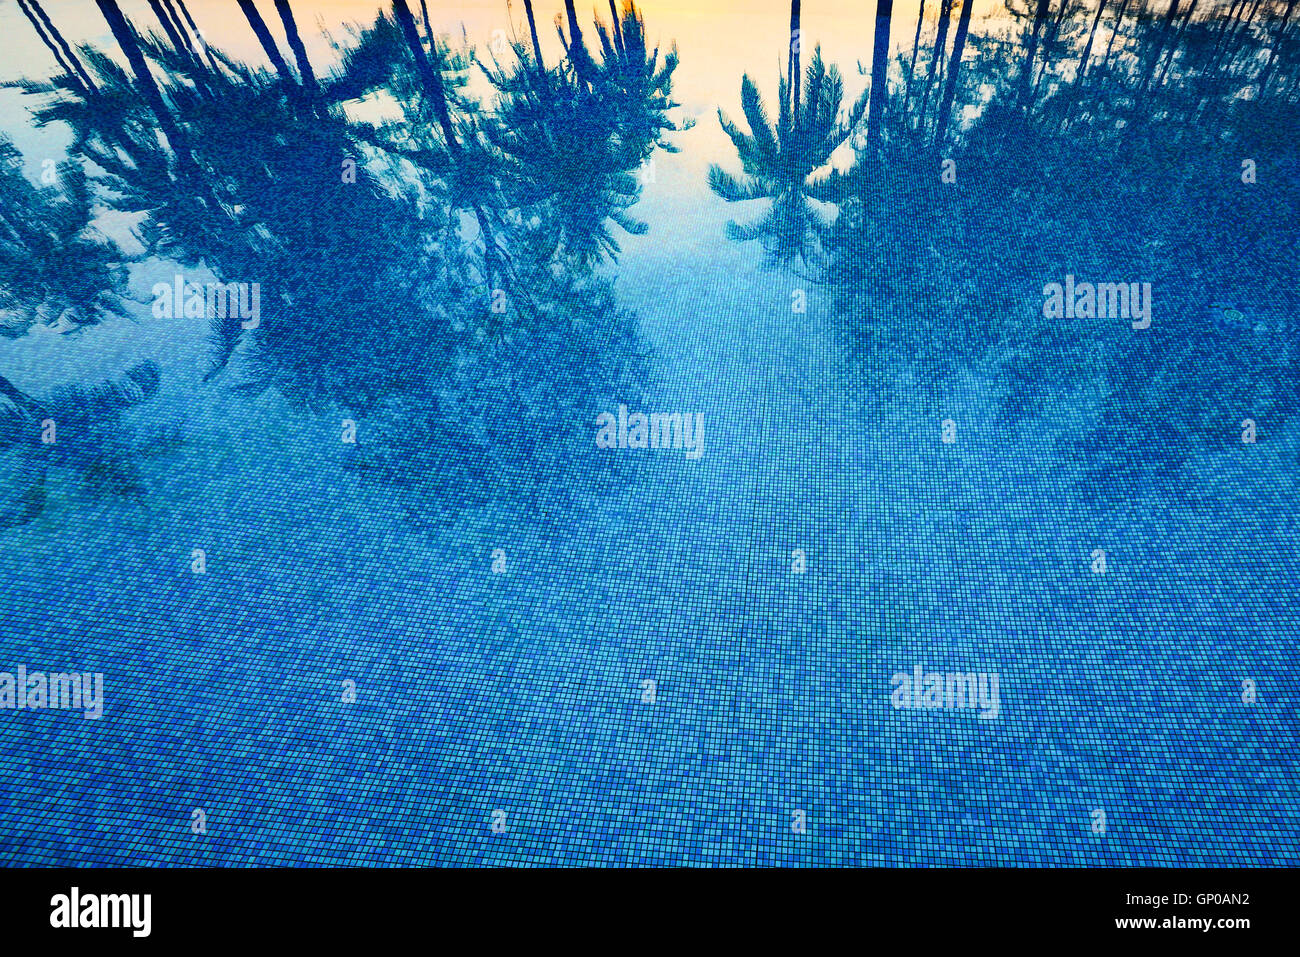 Reflexion von Kokospalmen und Zucker Plam Baum in tiefblauer Farbe Schwimmbad Stockfoto